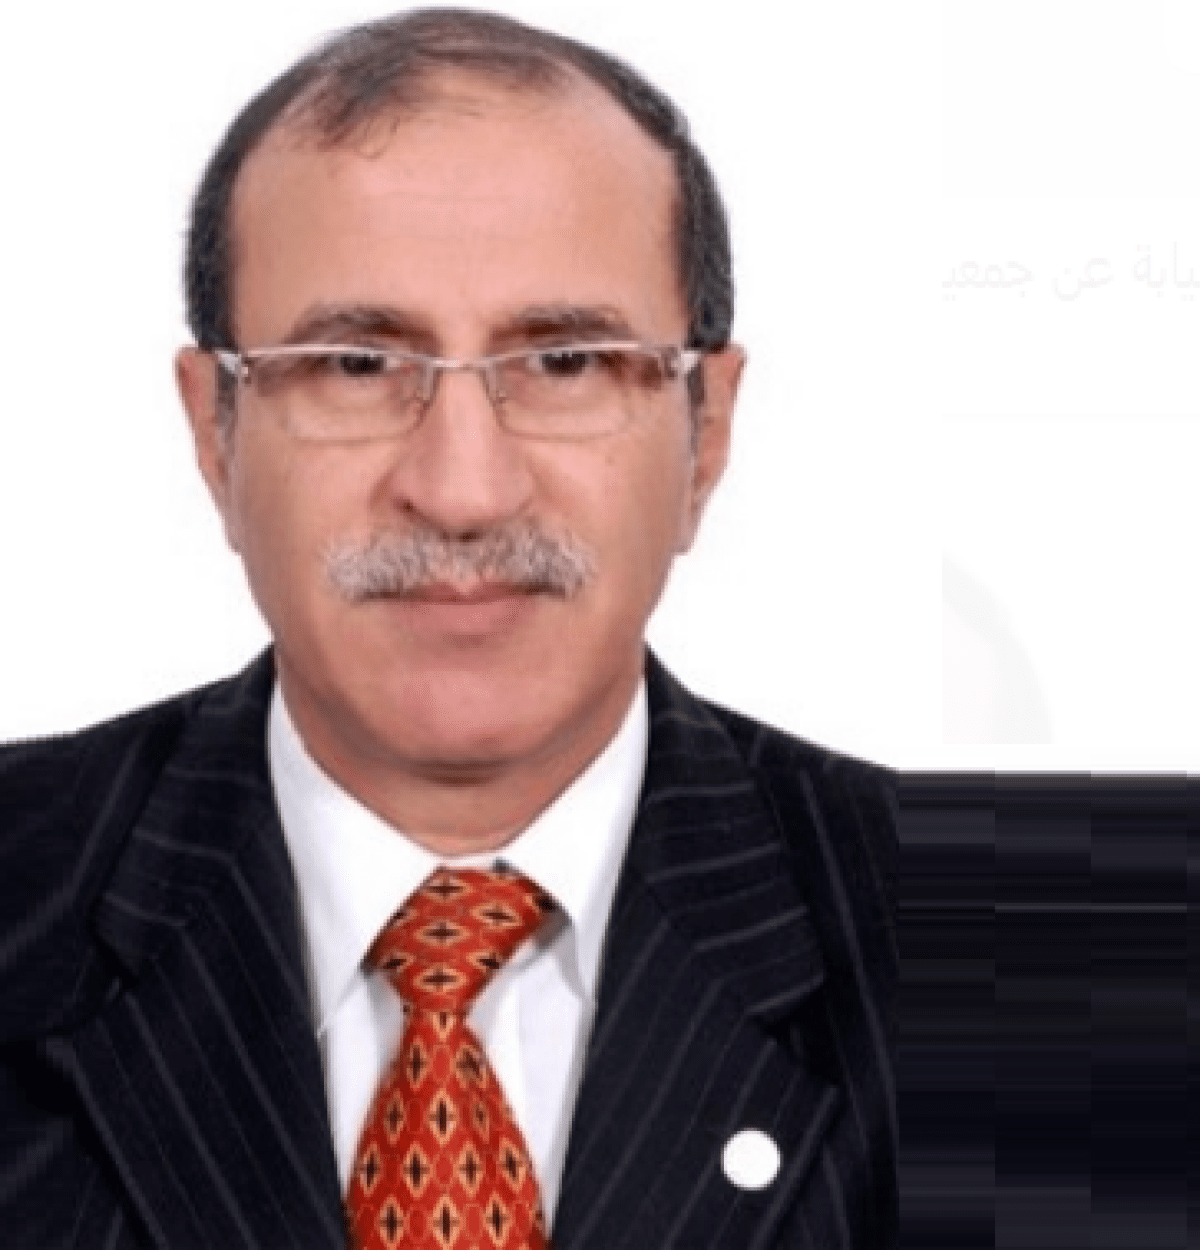 اتصال: انتخاب عاصم وهبي نائبًا لرئيس منظمة افيكتا